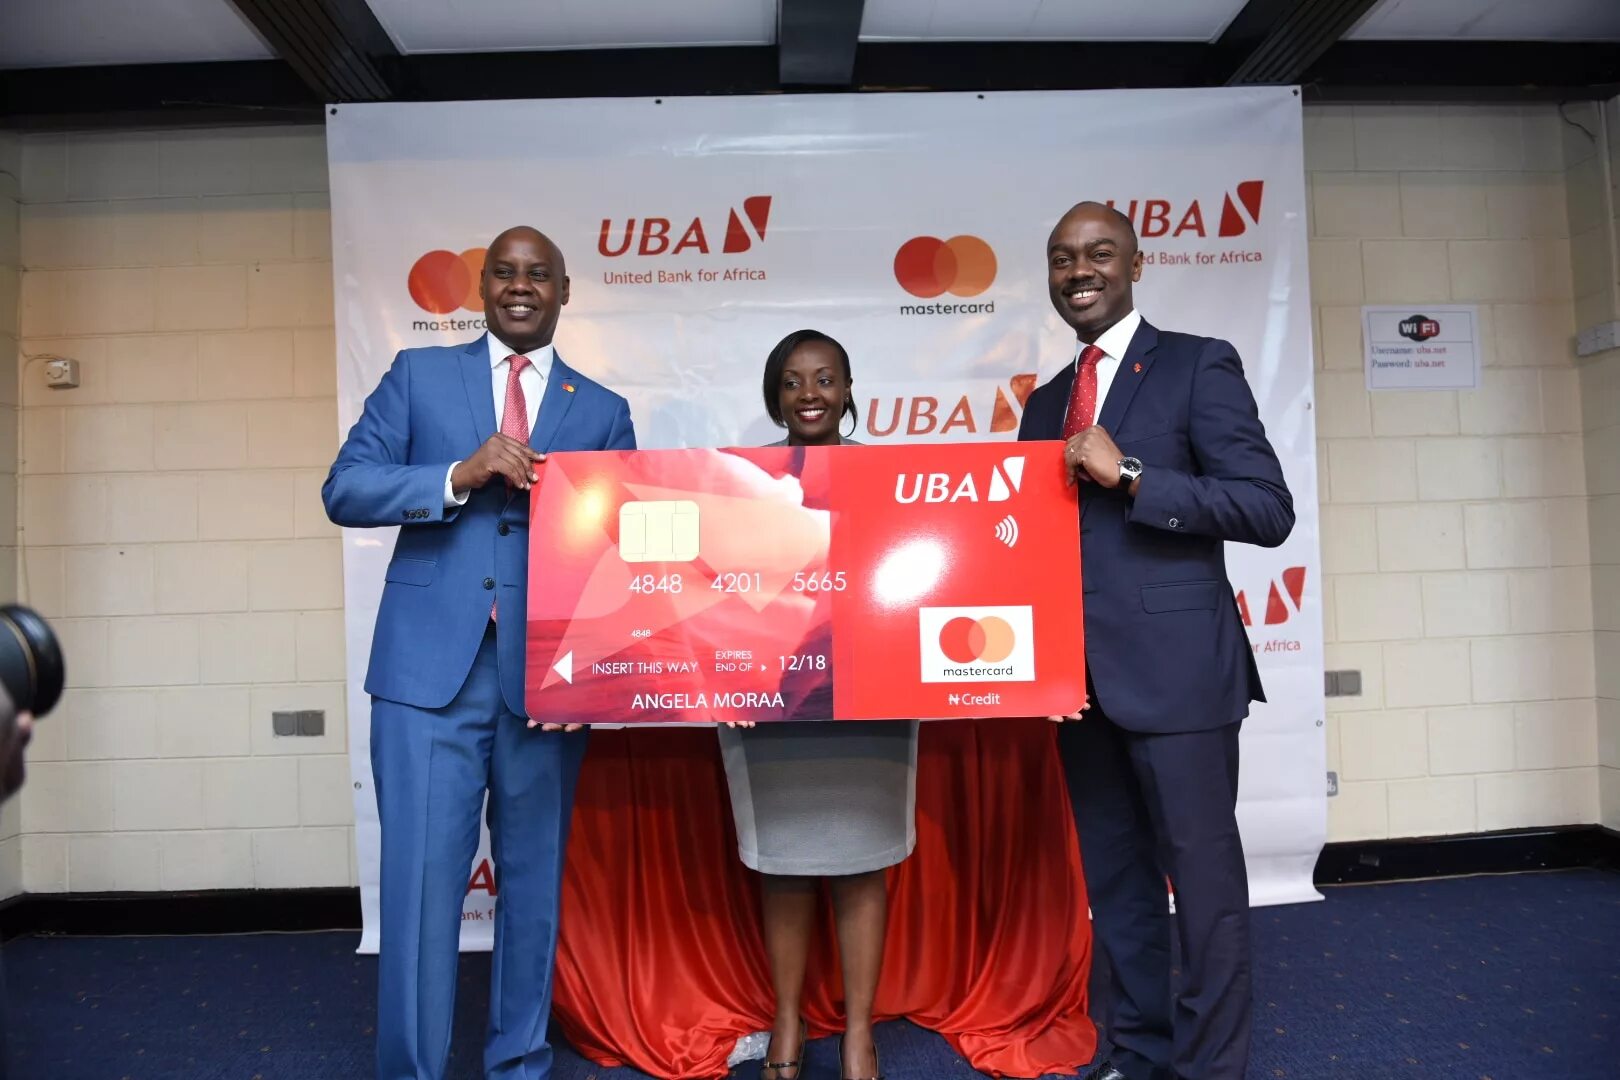 Africa bank. Банк UBA Africard. Новости UBA. UBA Bank logo. Africa Bank UAE.